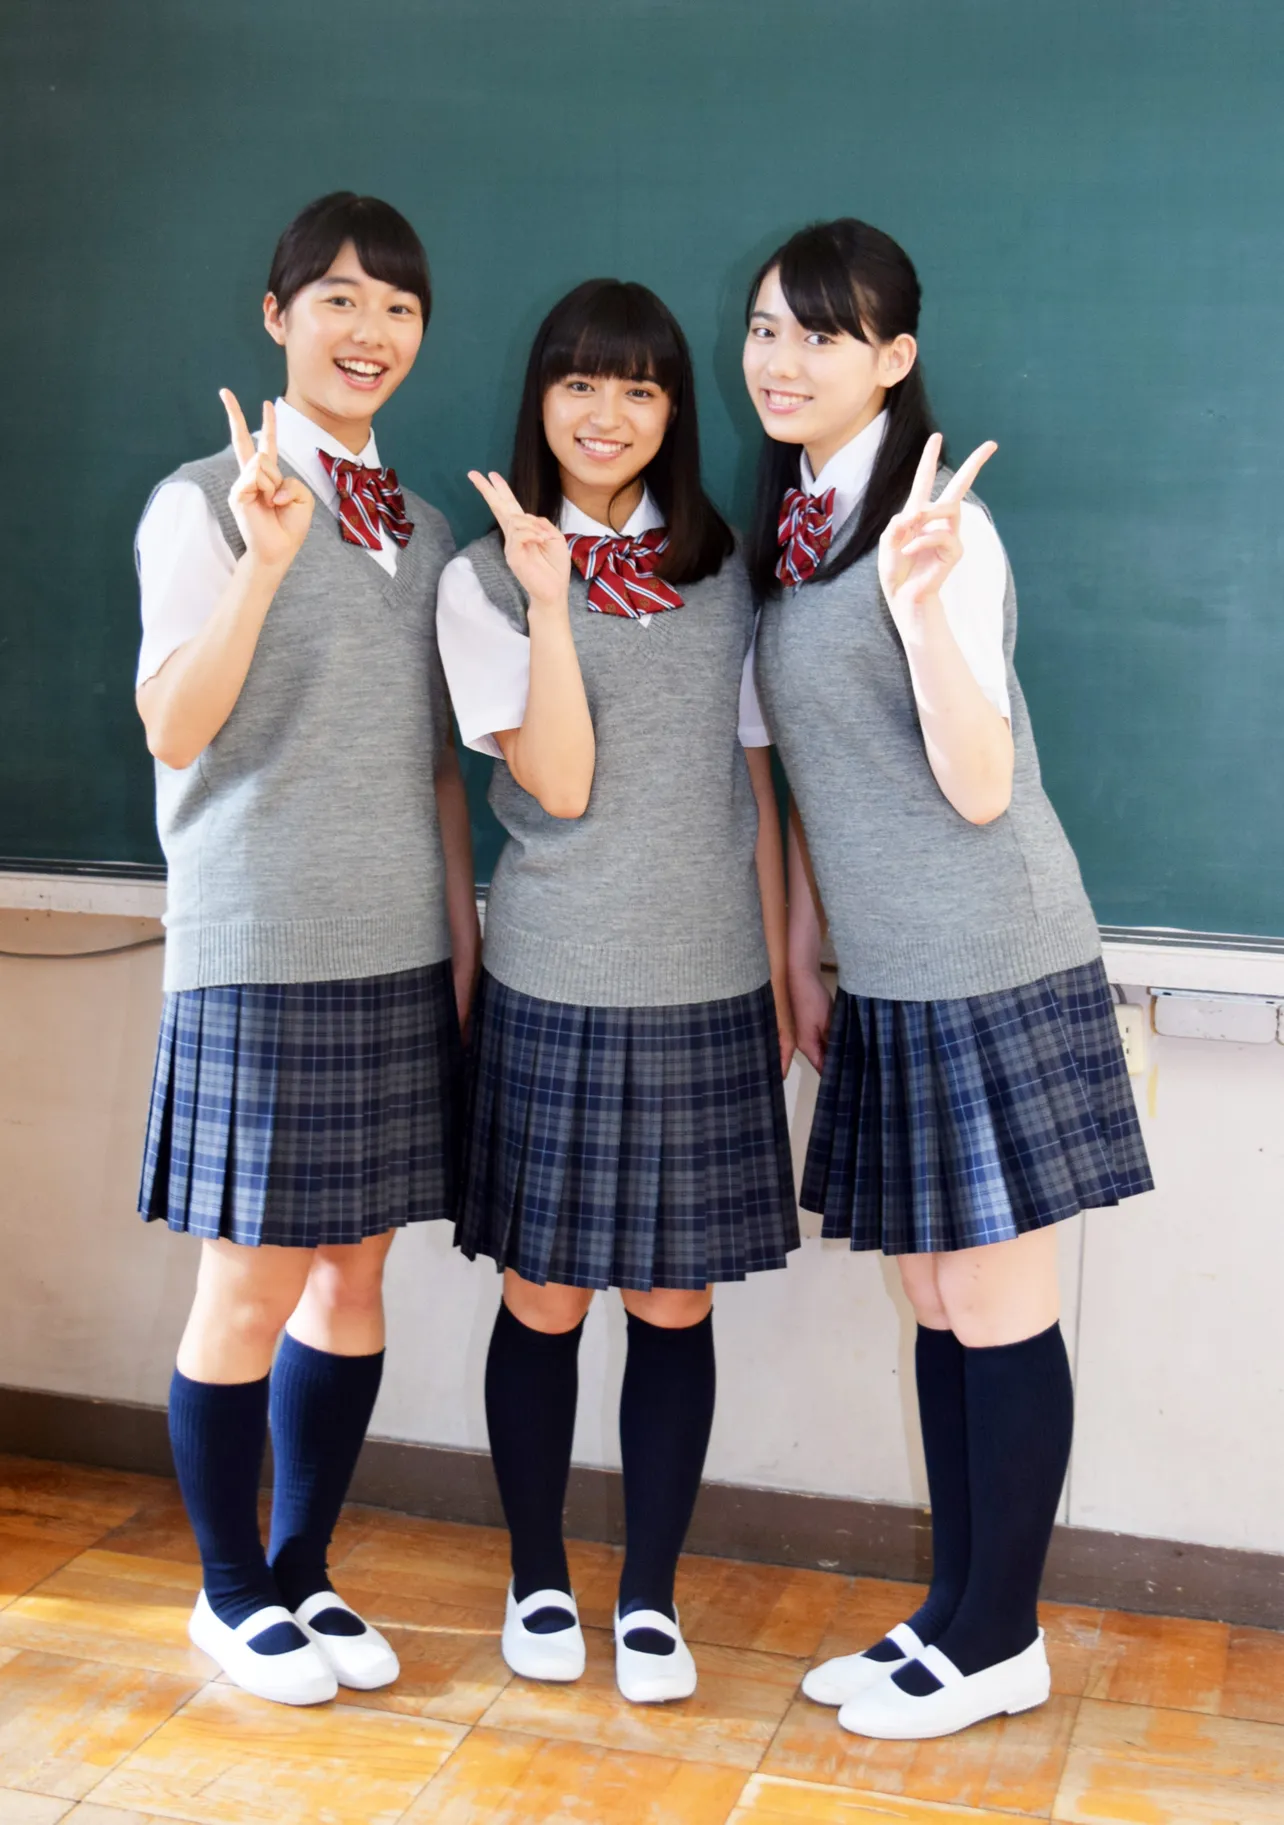 丸美屋の「混ぜ込みわかめ」新シリーズCMに出演する矢崎希菜、中尾萌那、毛利愛実(左から)